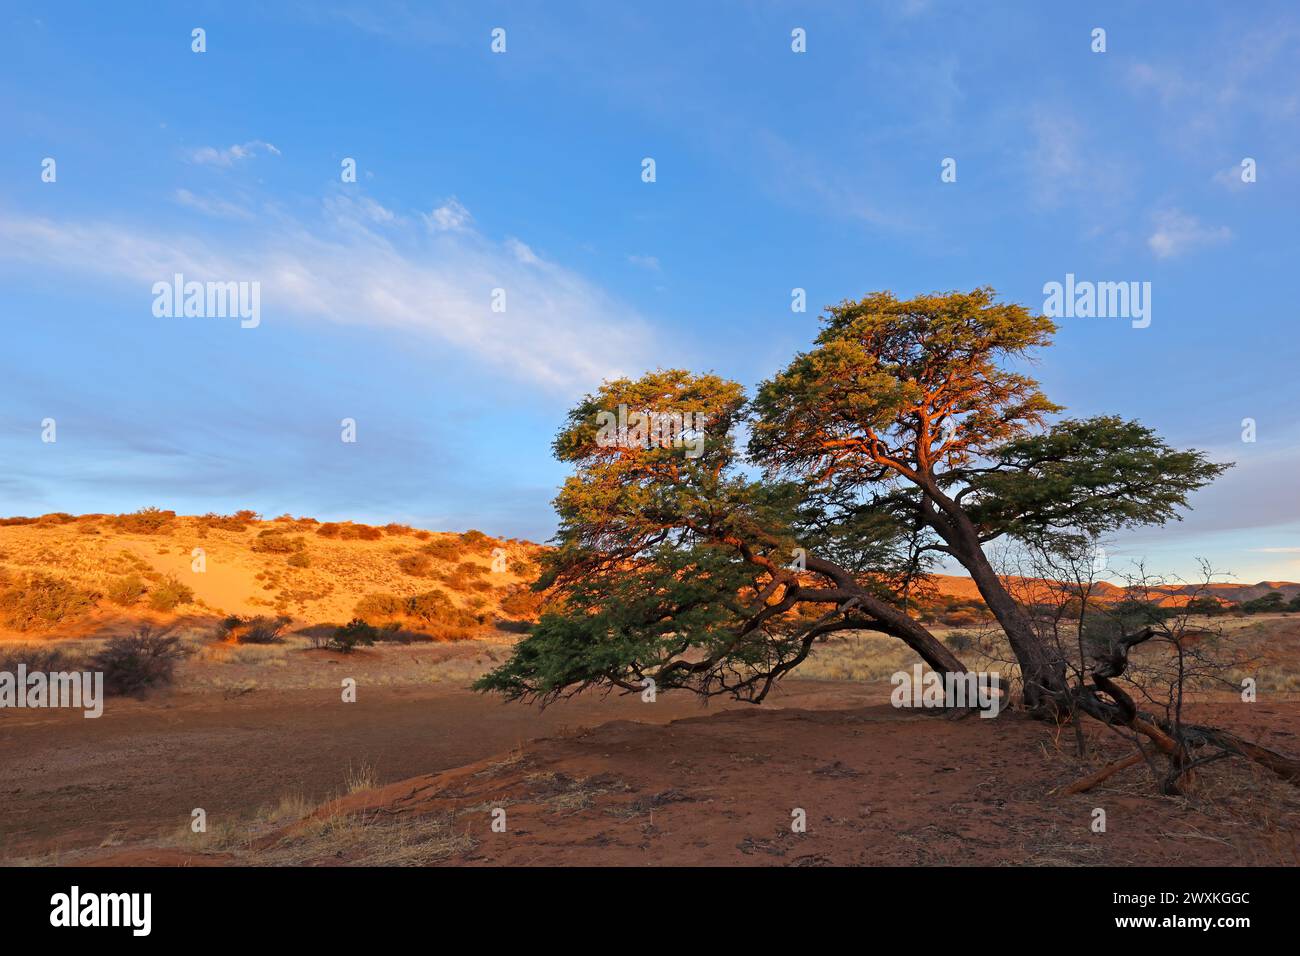 Malerische Landschaft mit einem Dornbaum und roten Sanddünen bei Sonnenuntergang, Kalahari Wüste, Südafrika Stockfoto